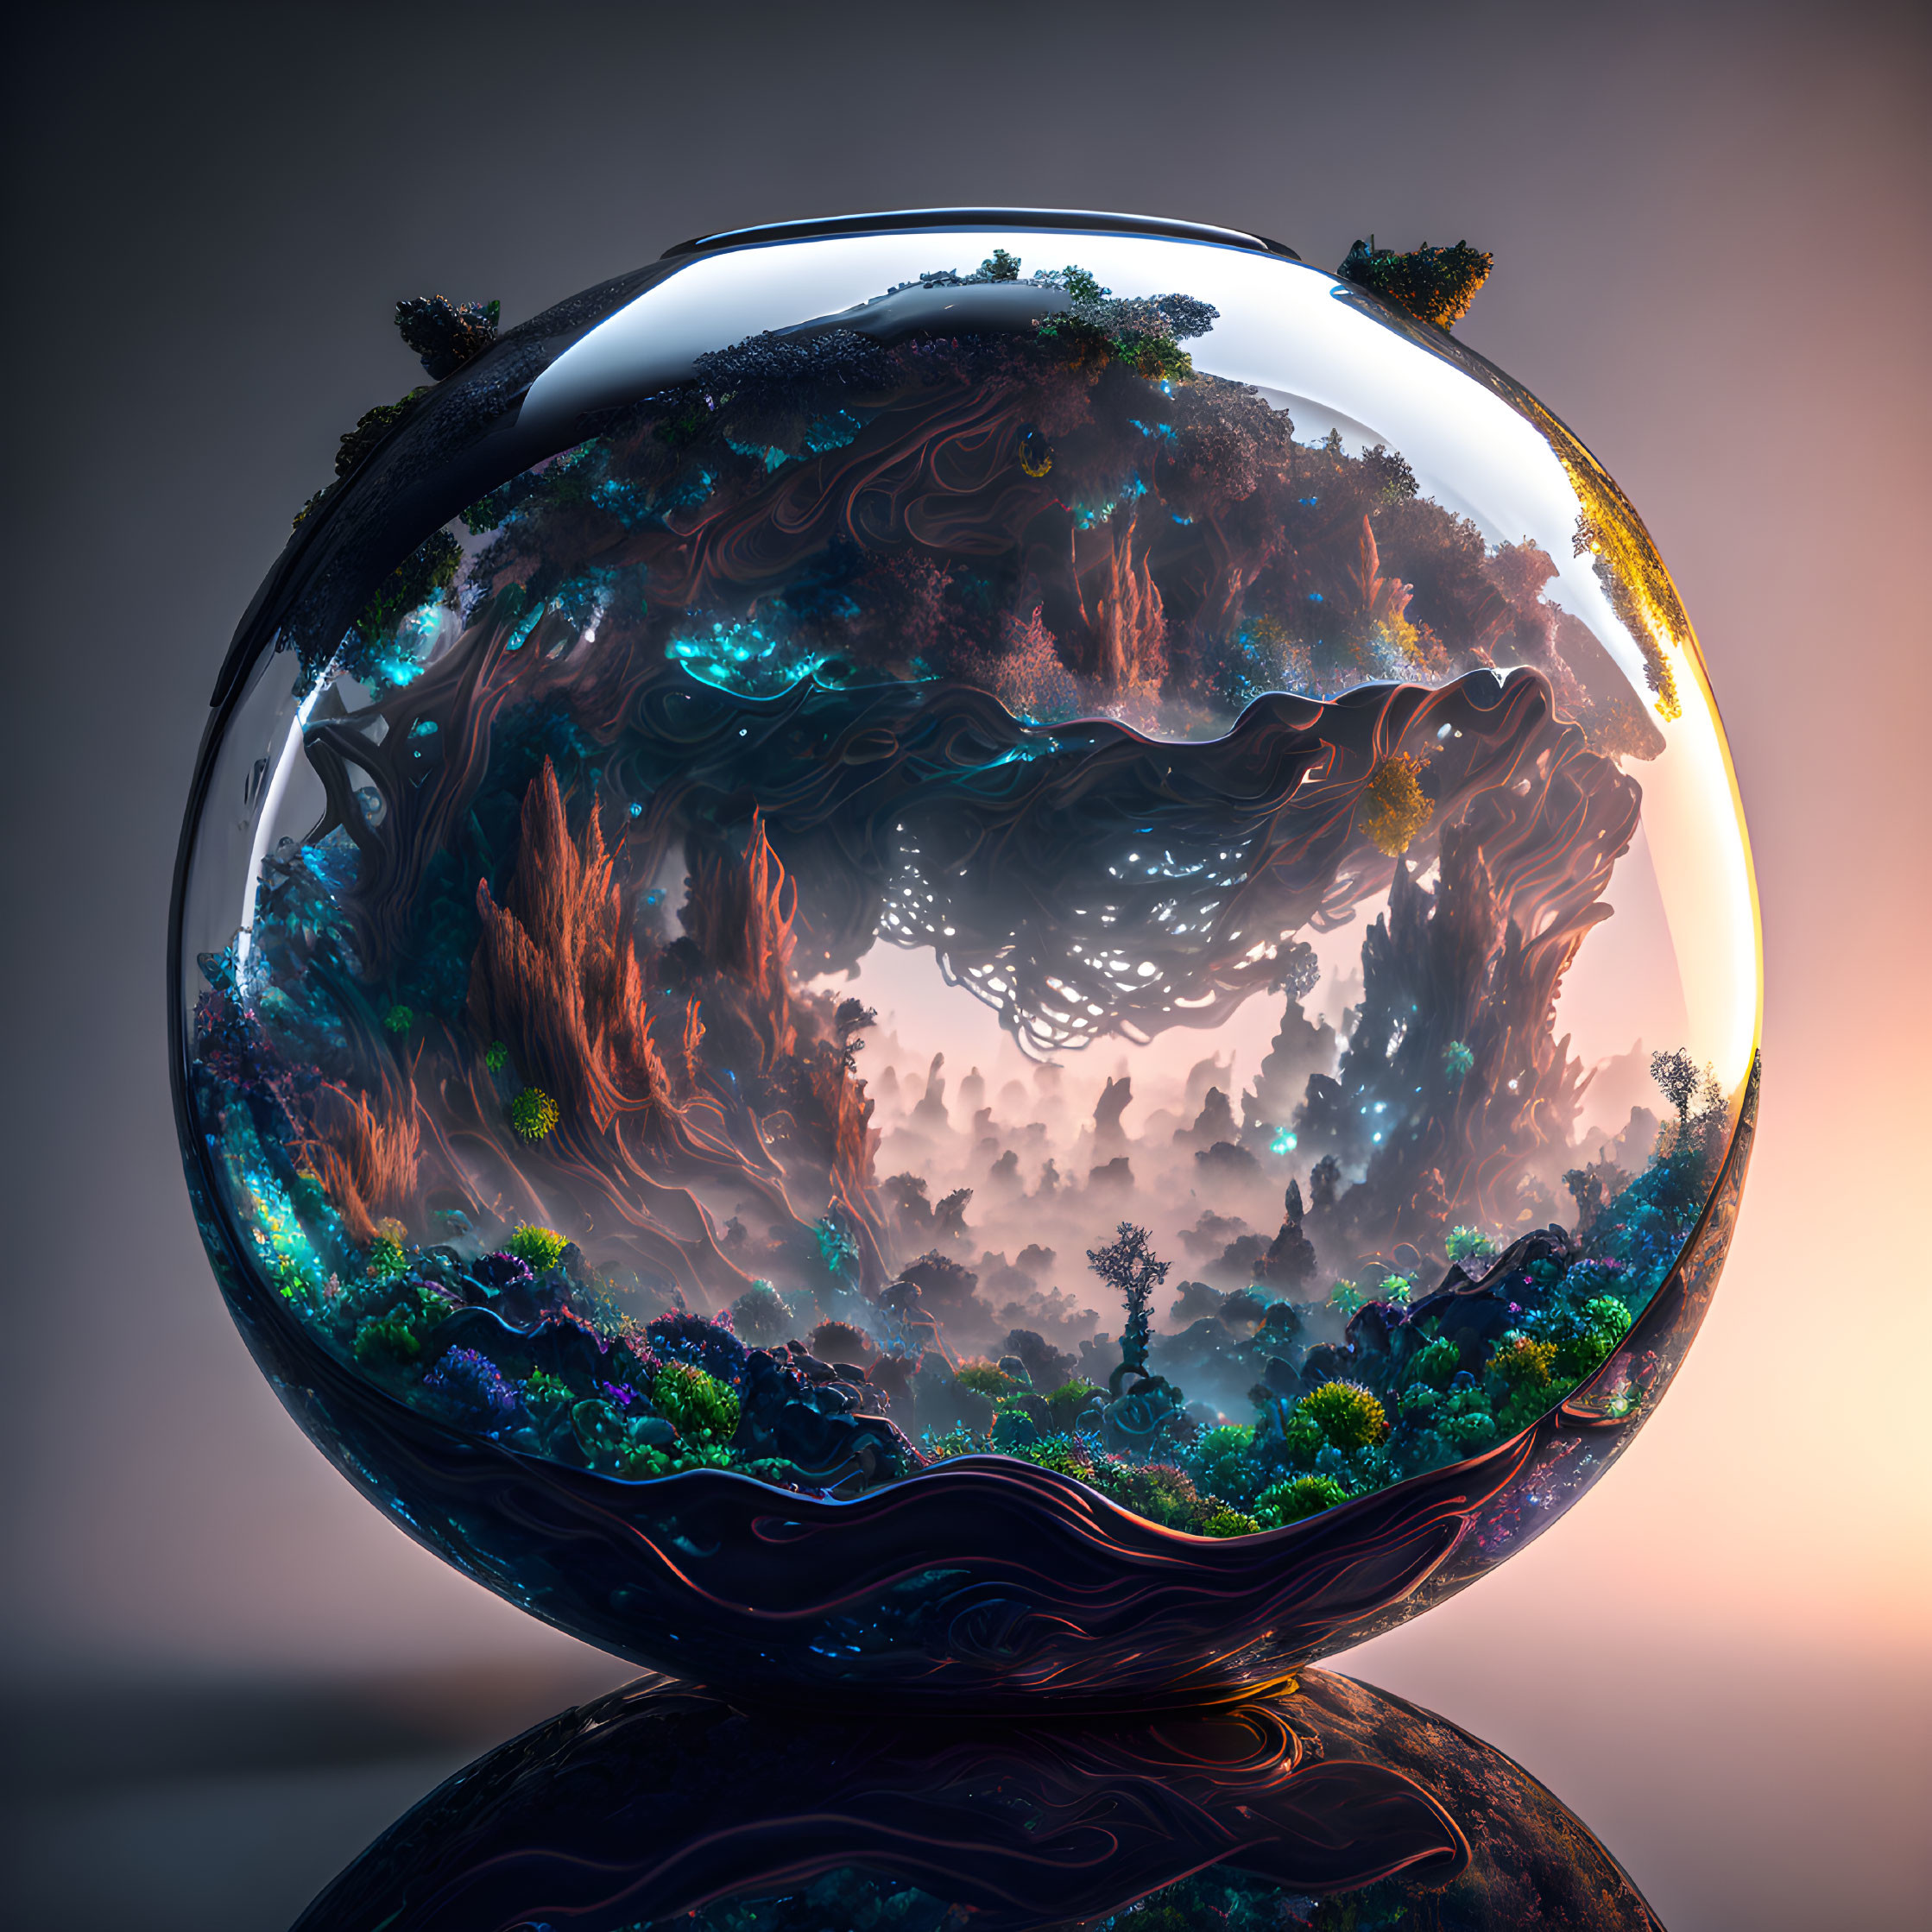 Lush Terrarium Ecosystem in Glass Sphere